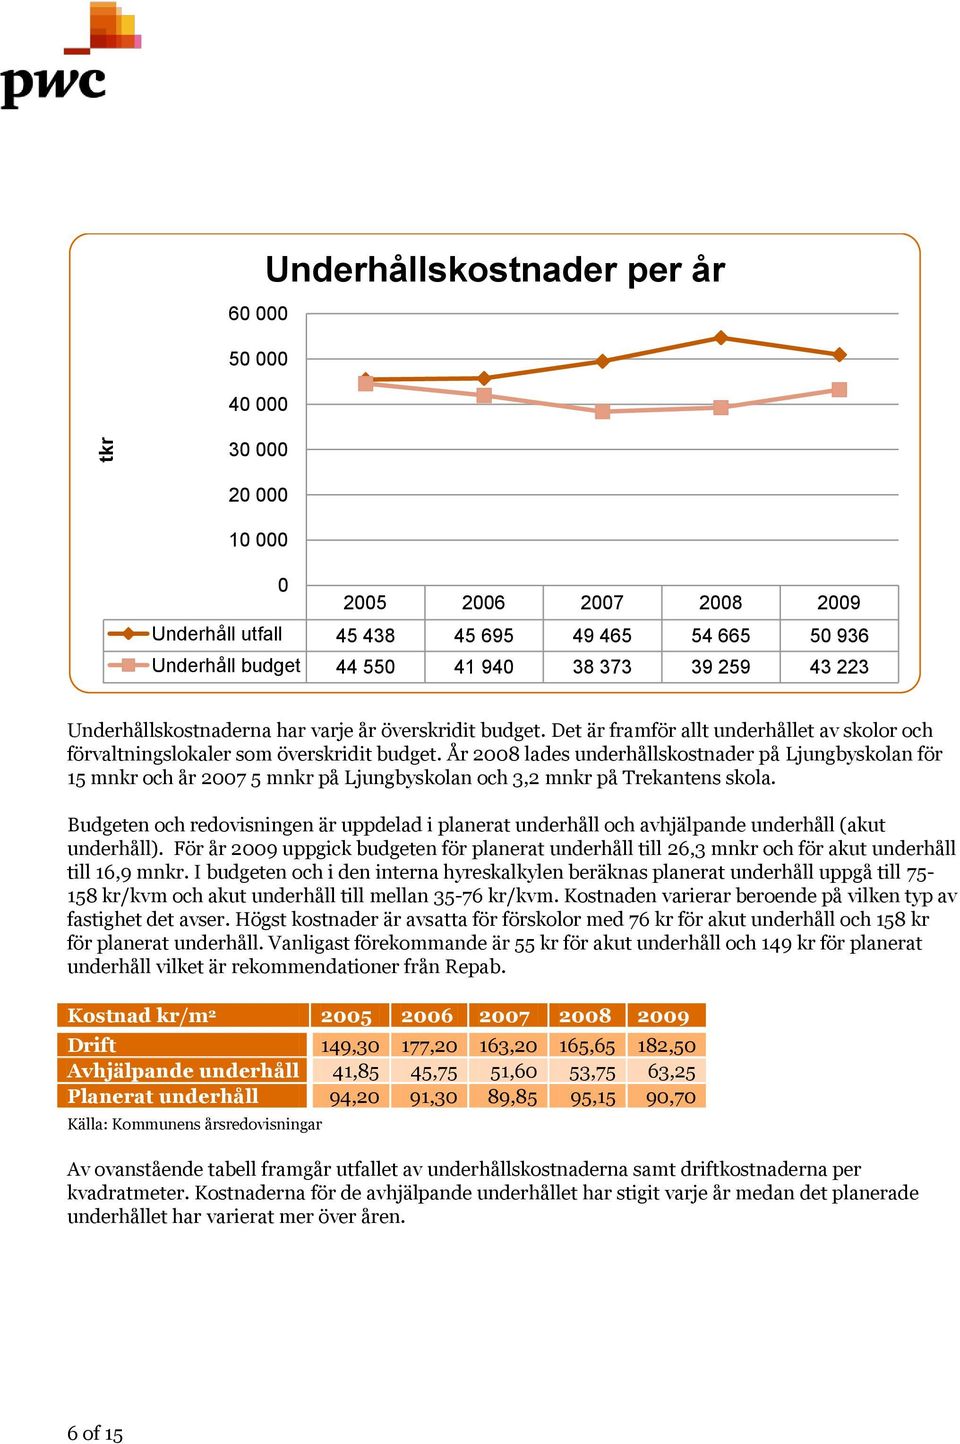 År 2008 lades underhållskostnader på Ljungbyskolan för 15 mnkr och år 2007 5 mnkr på Ljungbyskolan och 3,2 mnkr på Trekantens skola.